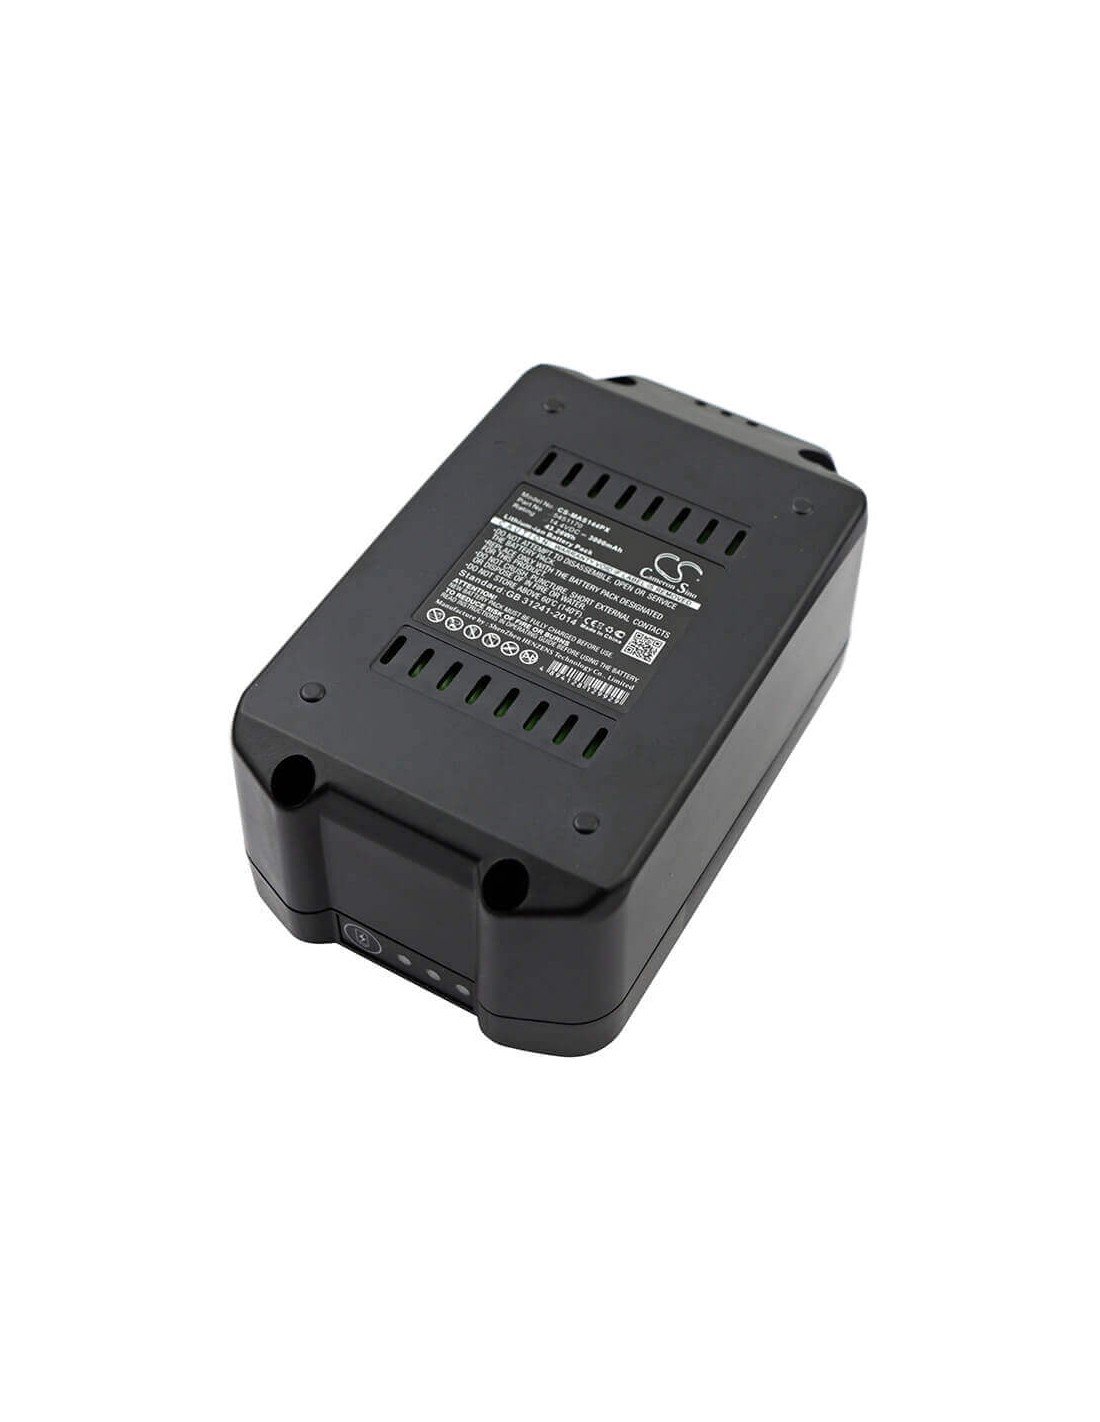 Battery for Meister Craft, 5450880, Mas144, Mas144vl 14.4V, 3000mAh - 43.20Wh